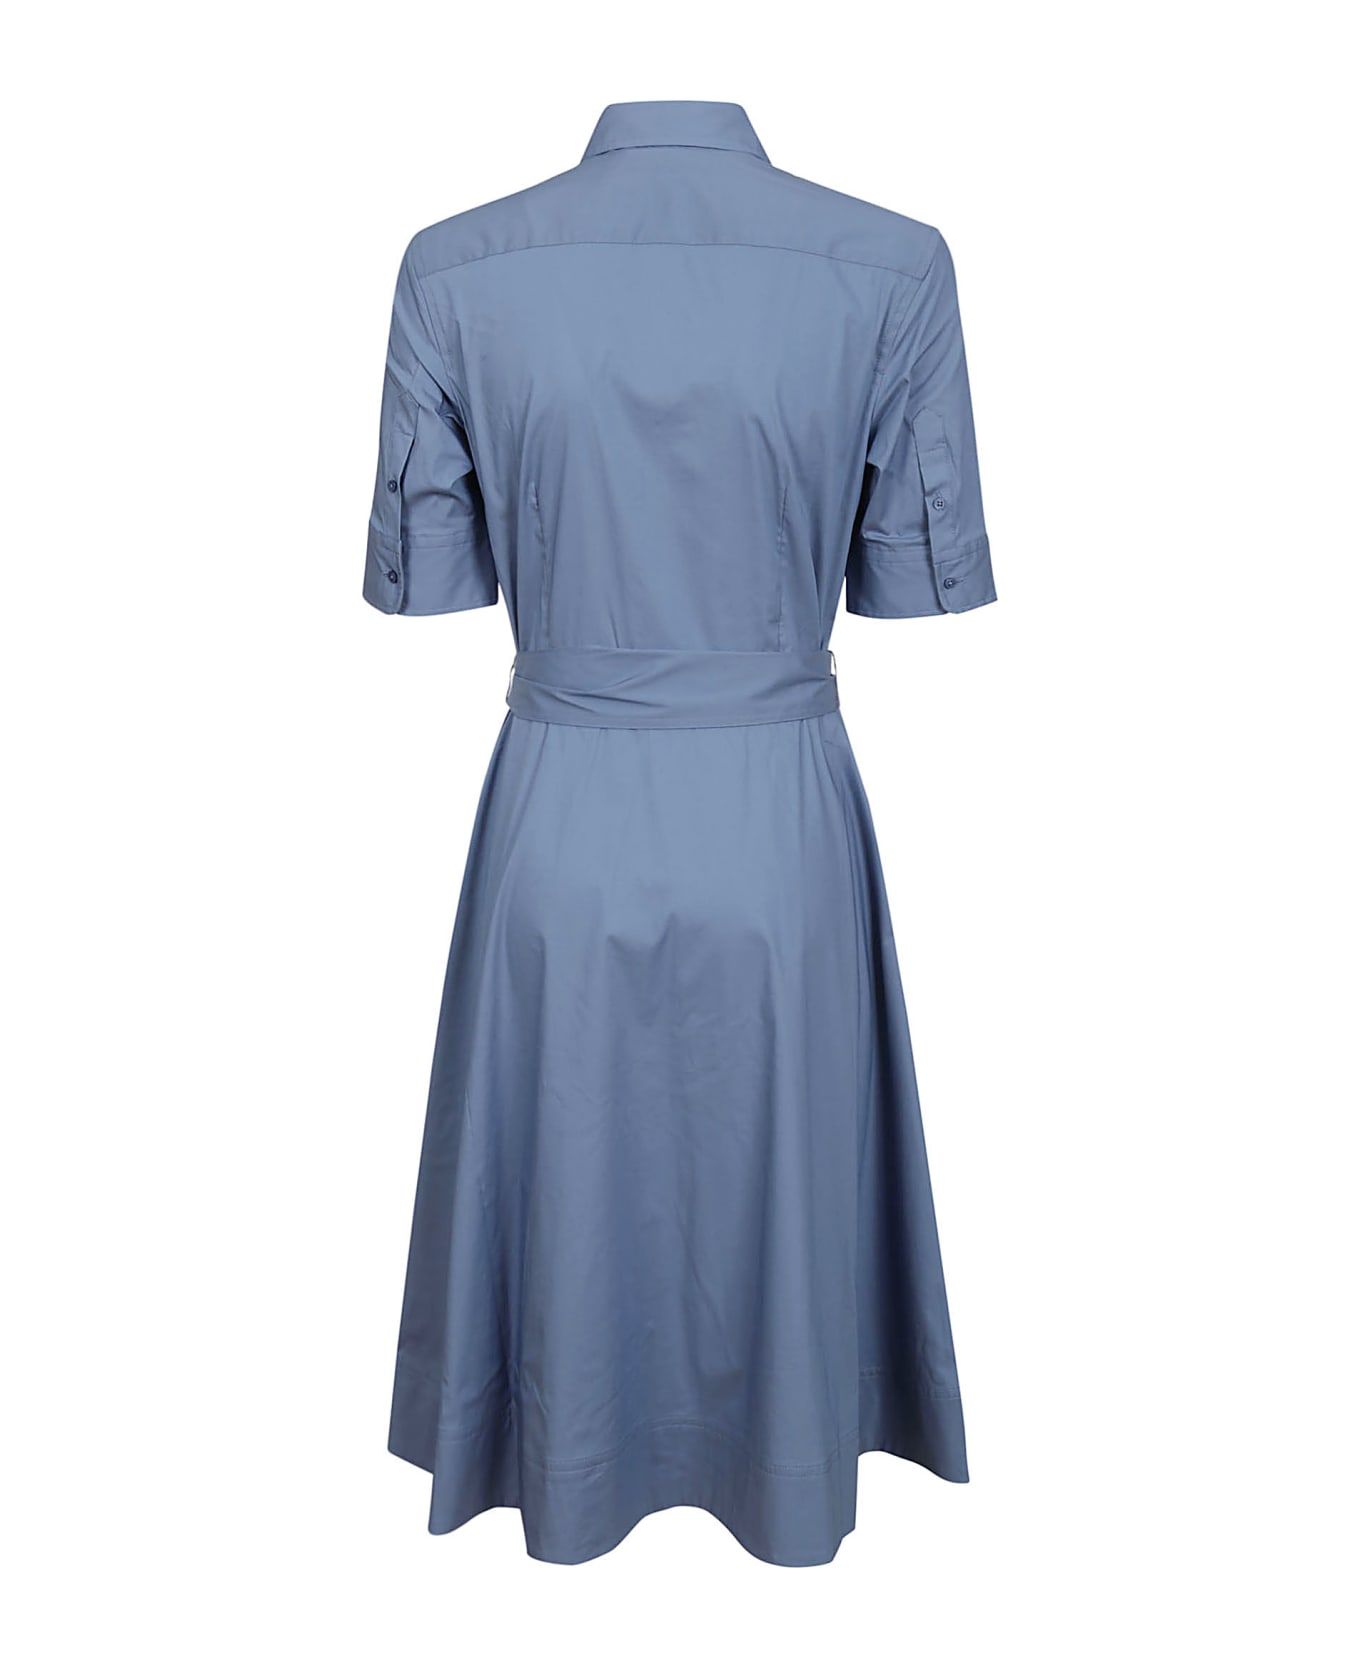 Ralph Lauren Finnbarr Short Sleeve Casual Dress - Pale Azure